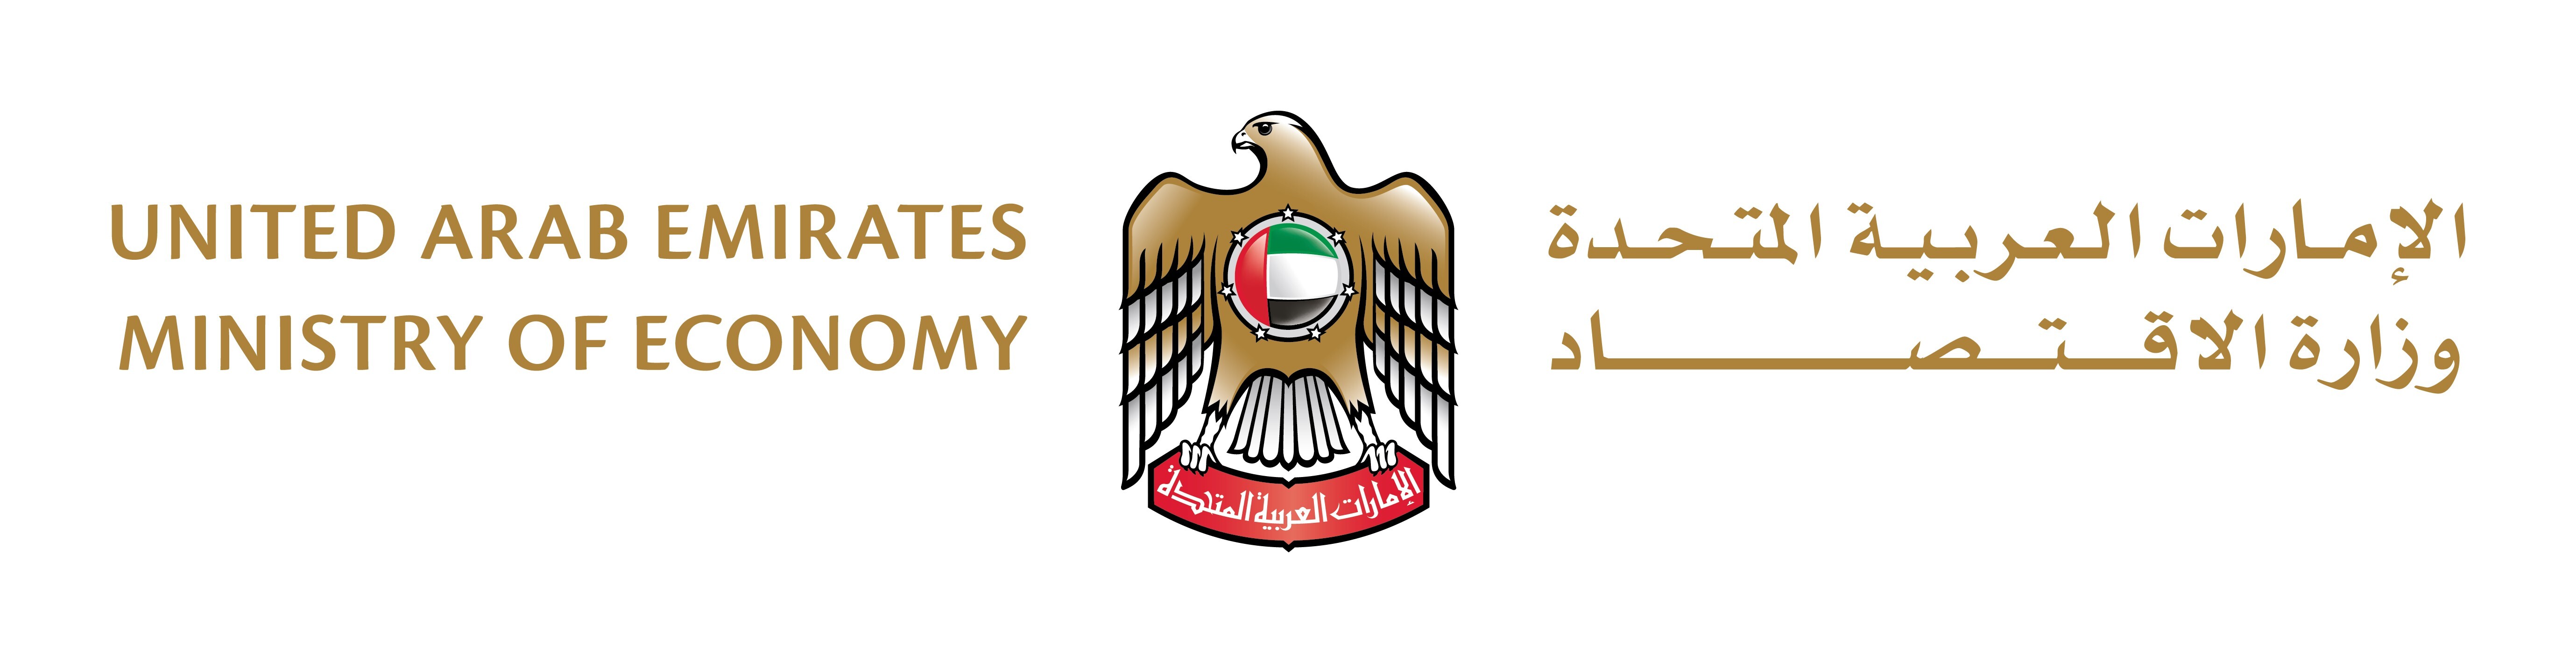 UAE Ministry of Economy